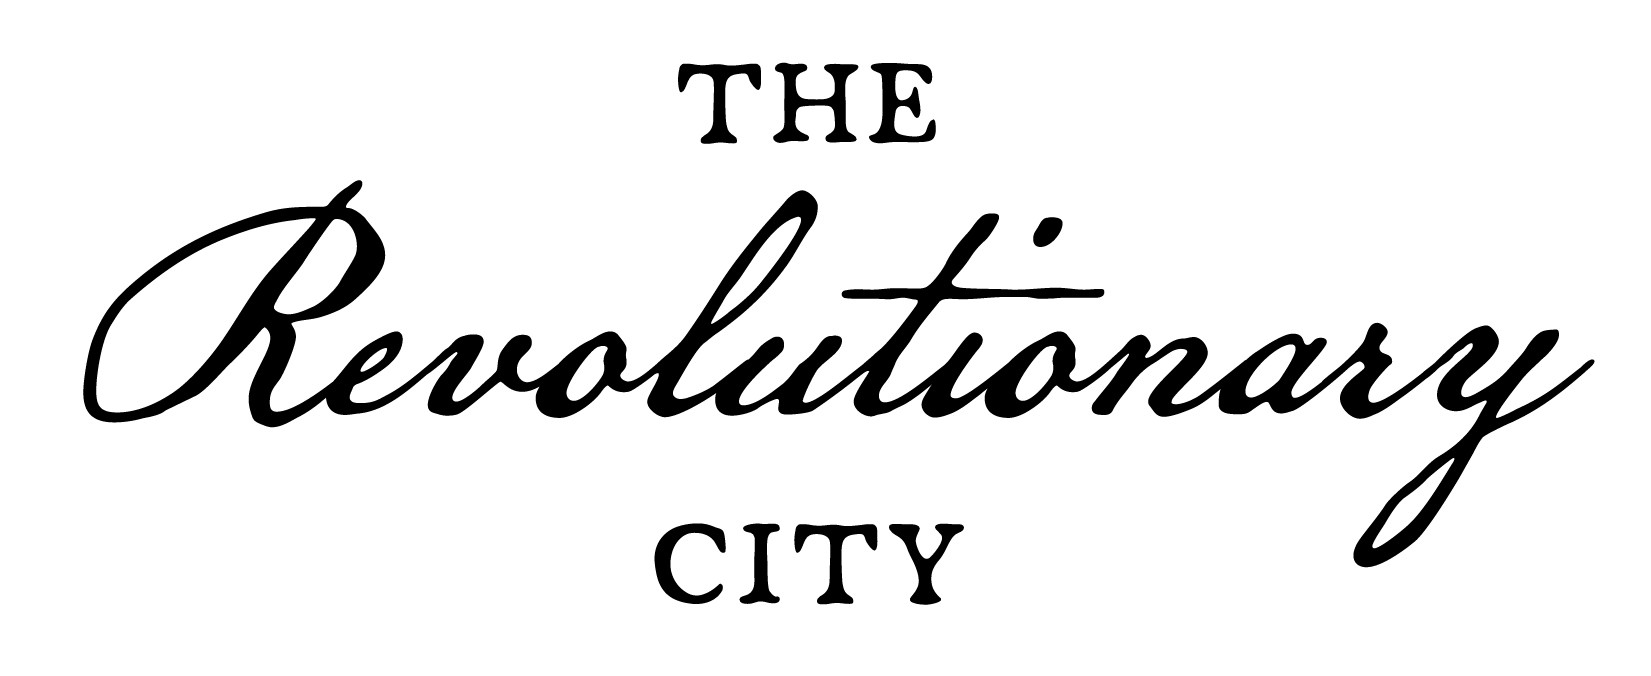 The Revolutionary City Logo